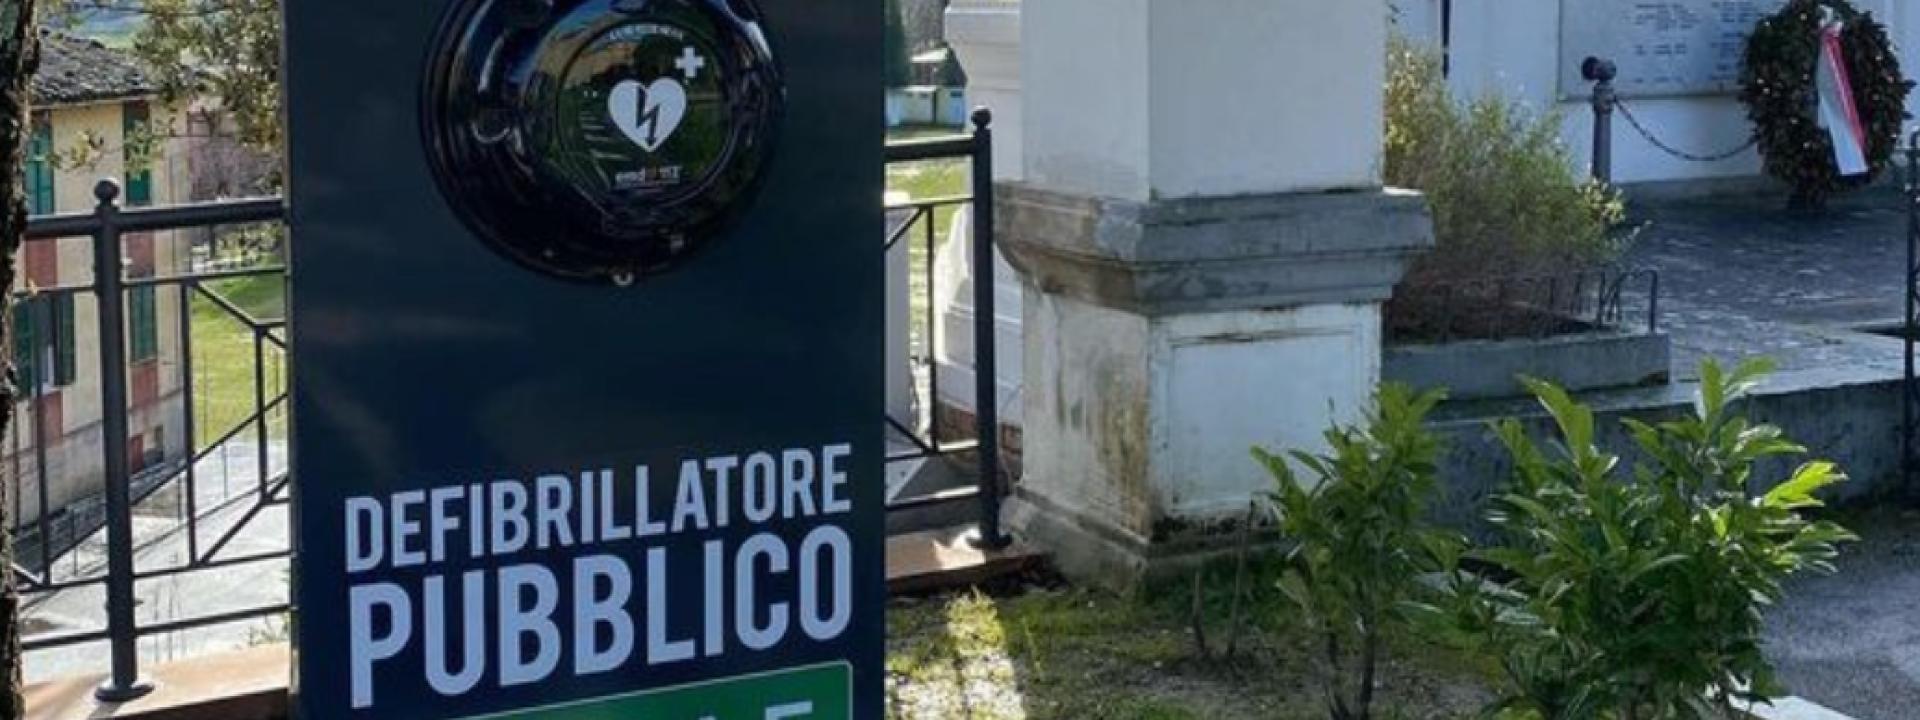 Marche - Sarnano, installato un defibrillatore pubblico in piazza della Libertà